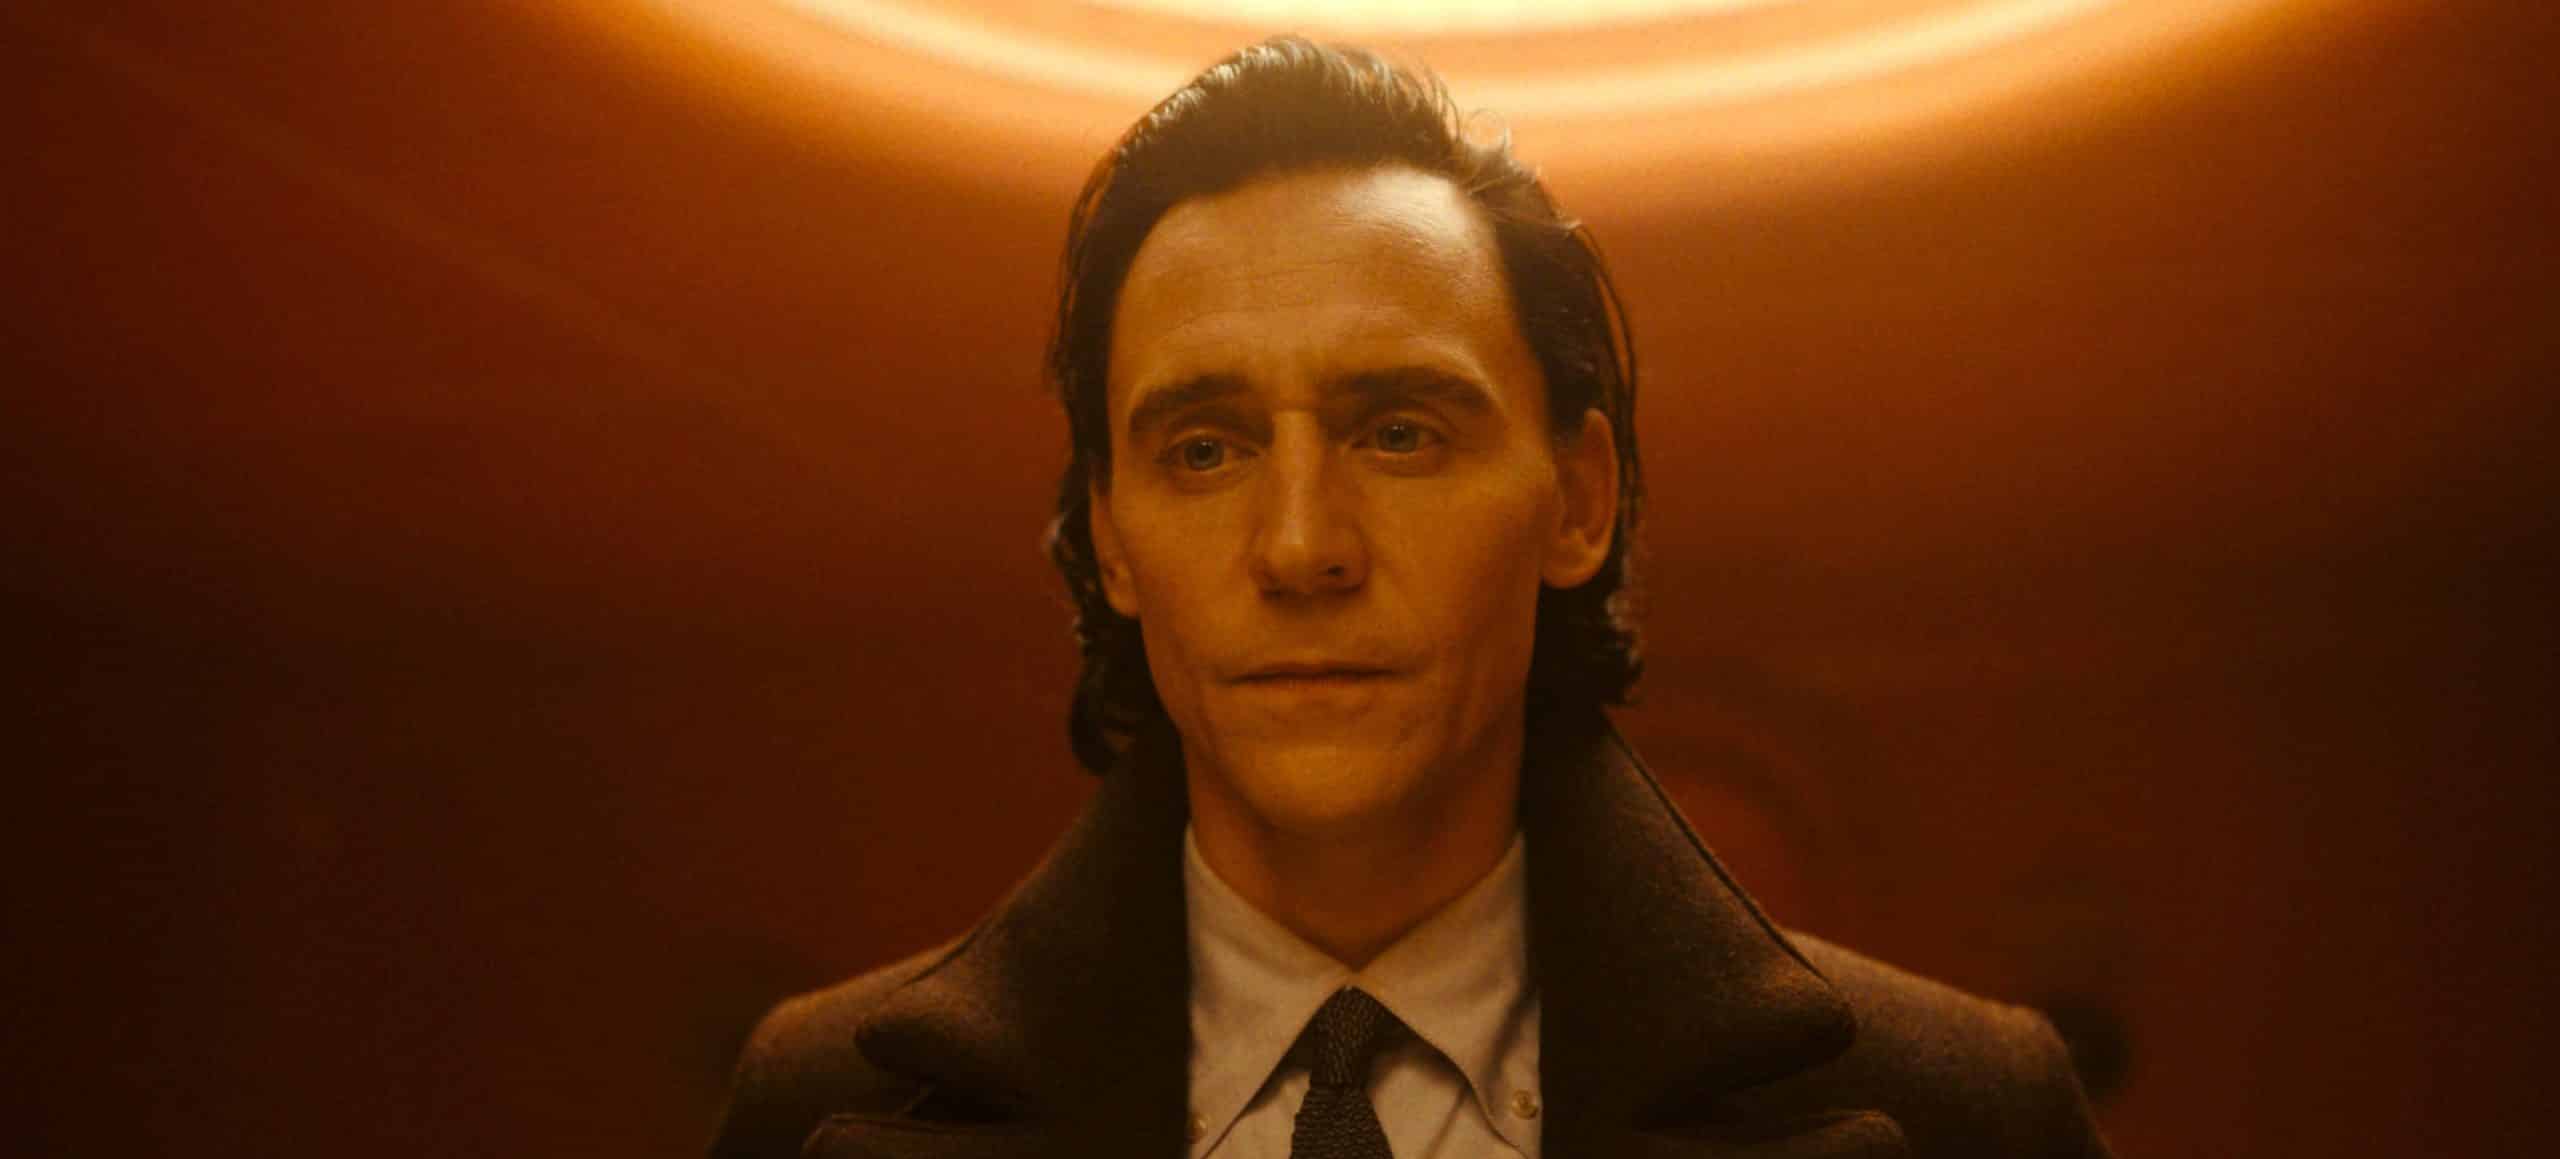 Loki 2ª temporada, Episódio 6, está prestes a ser lançado pelo Disney+